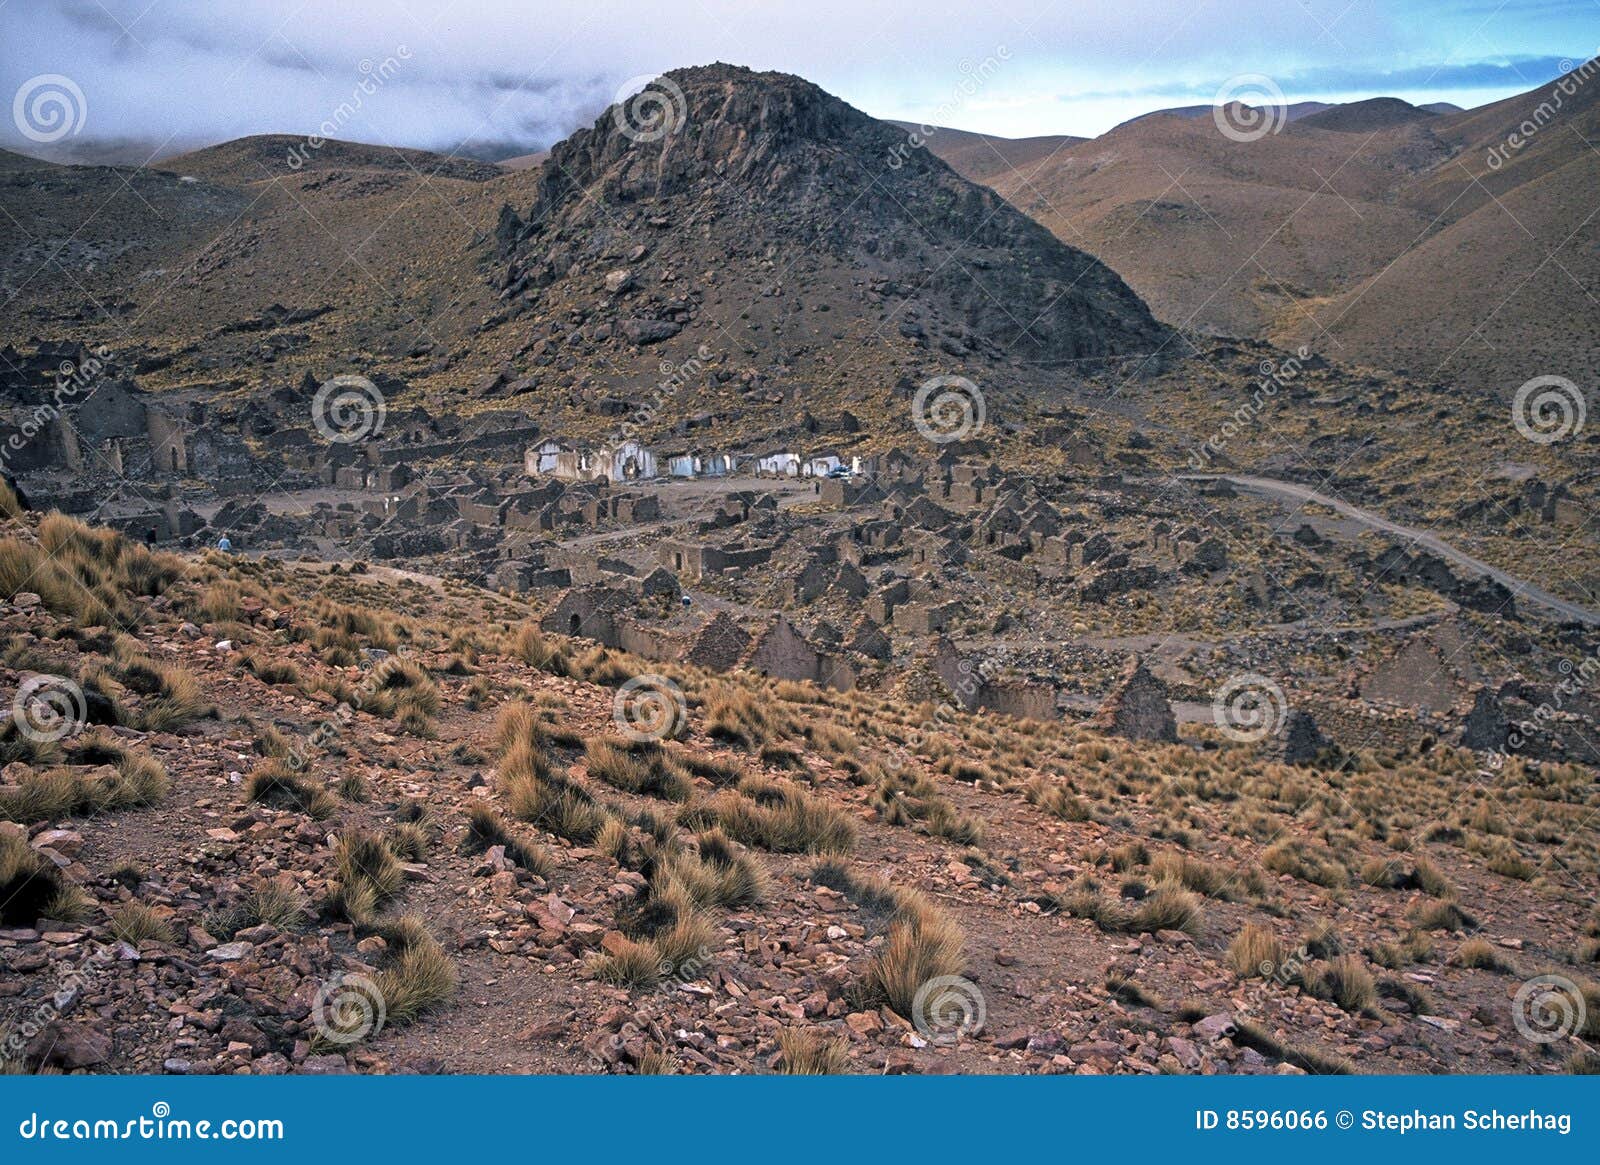 ruins on altiplano in bolivia,bolivia